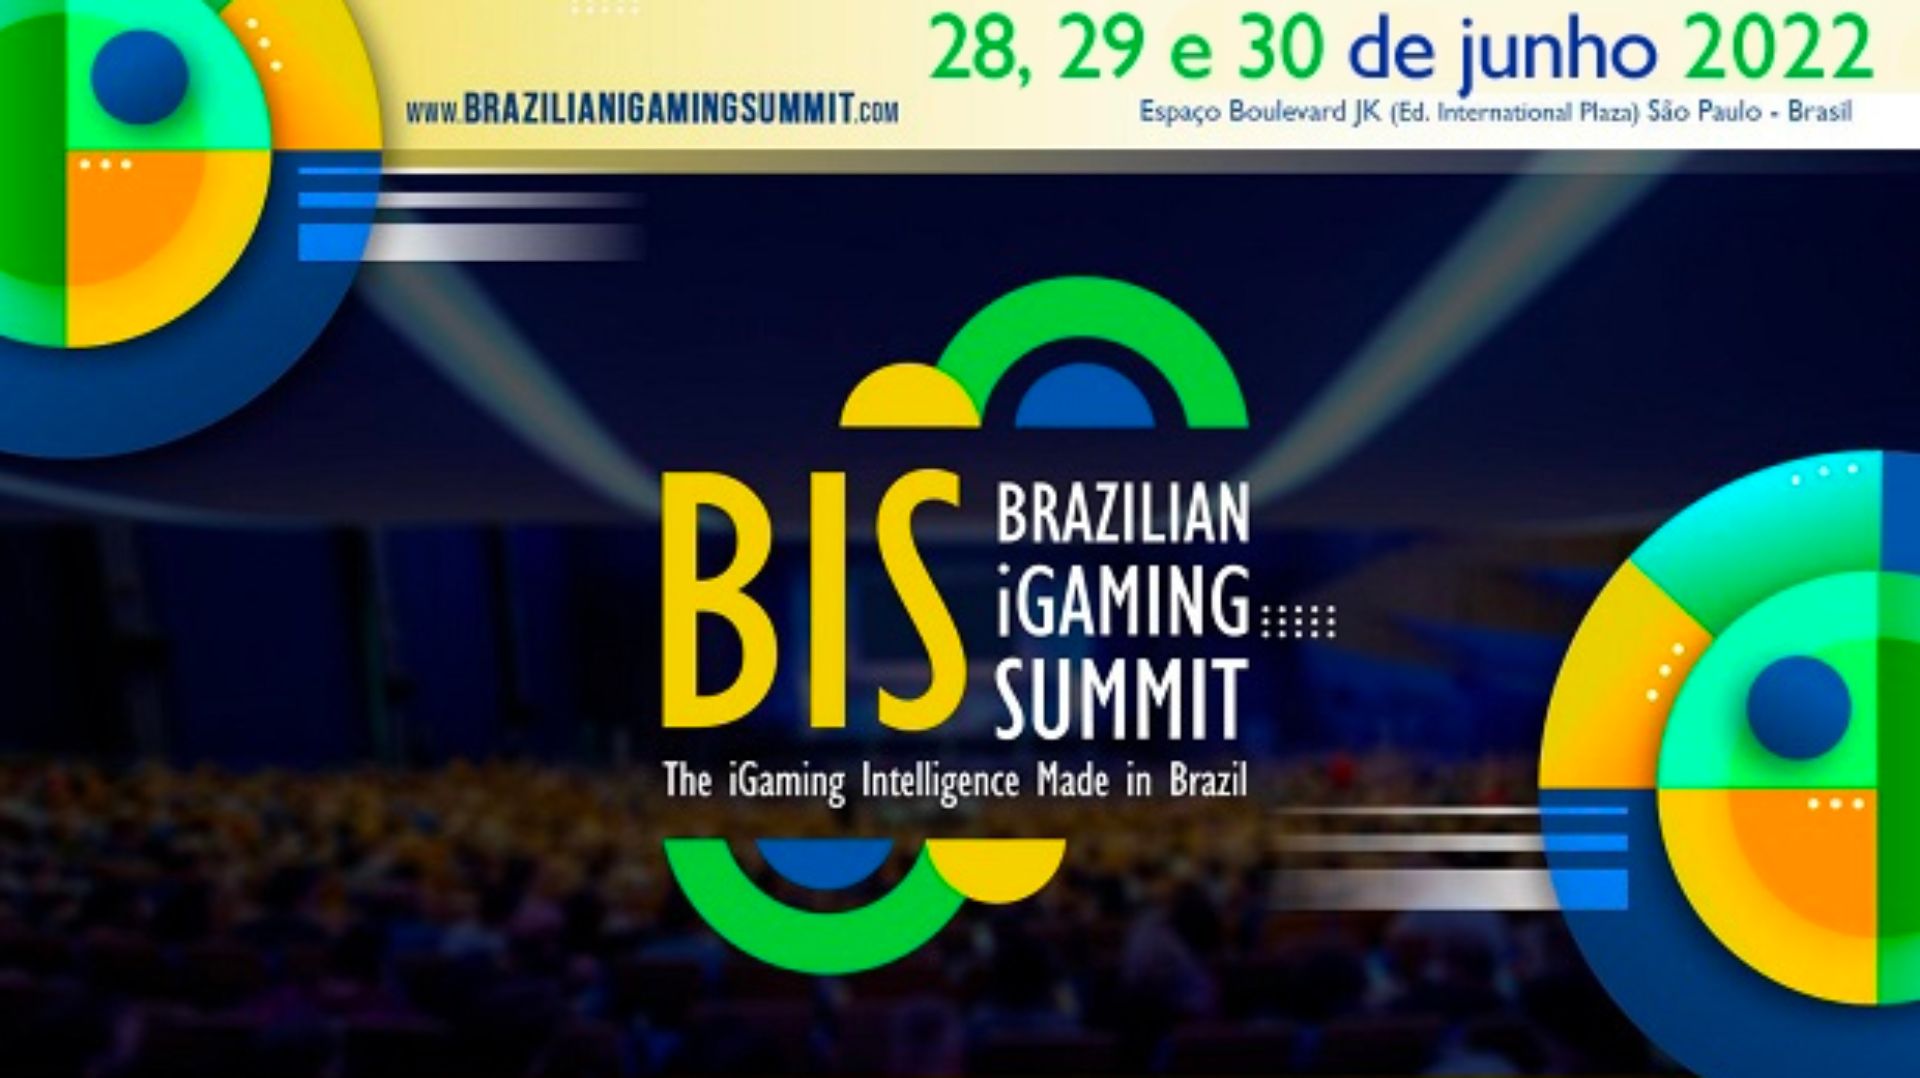 Confirmado! O Brazilian iGaming Summit 2022 ocorrerá nos dias 28